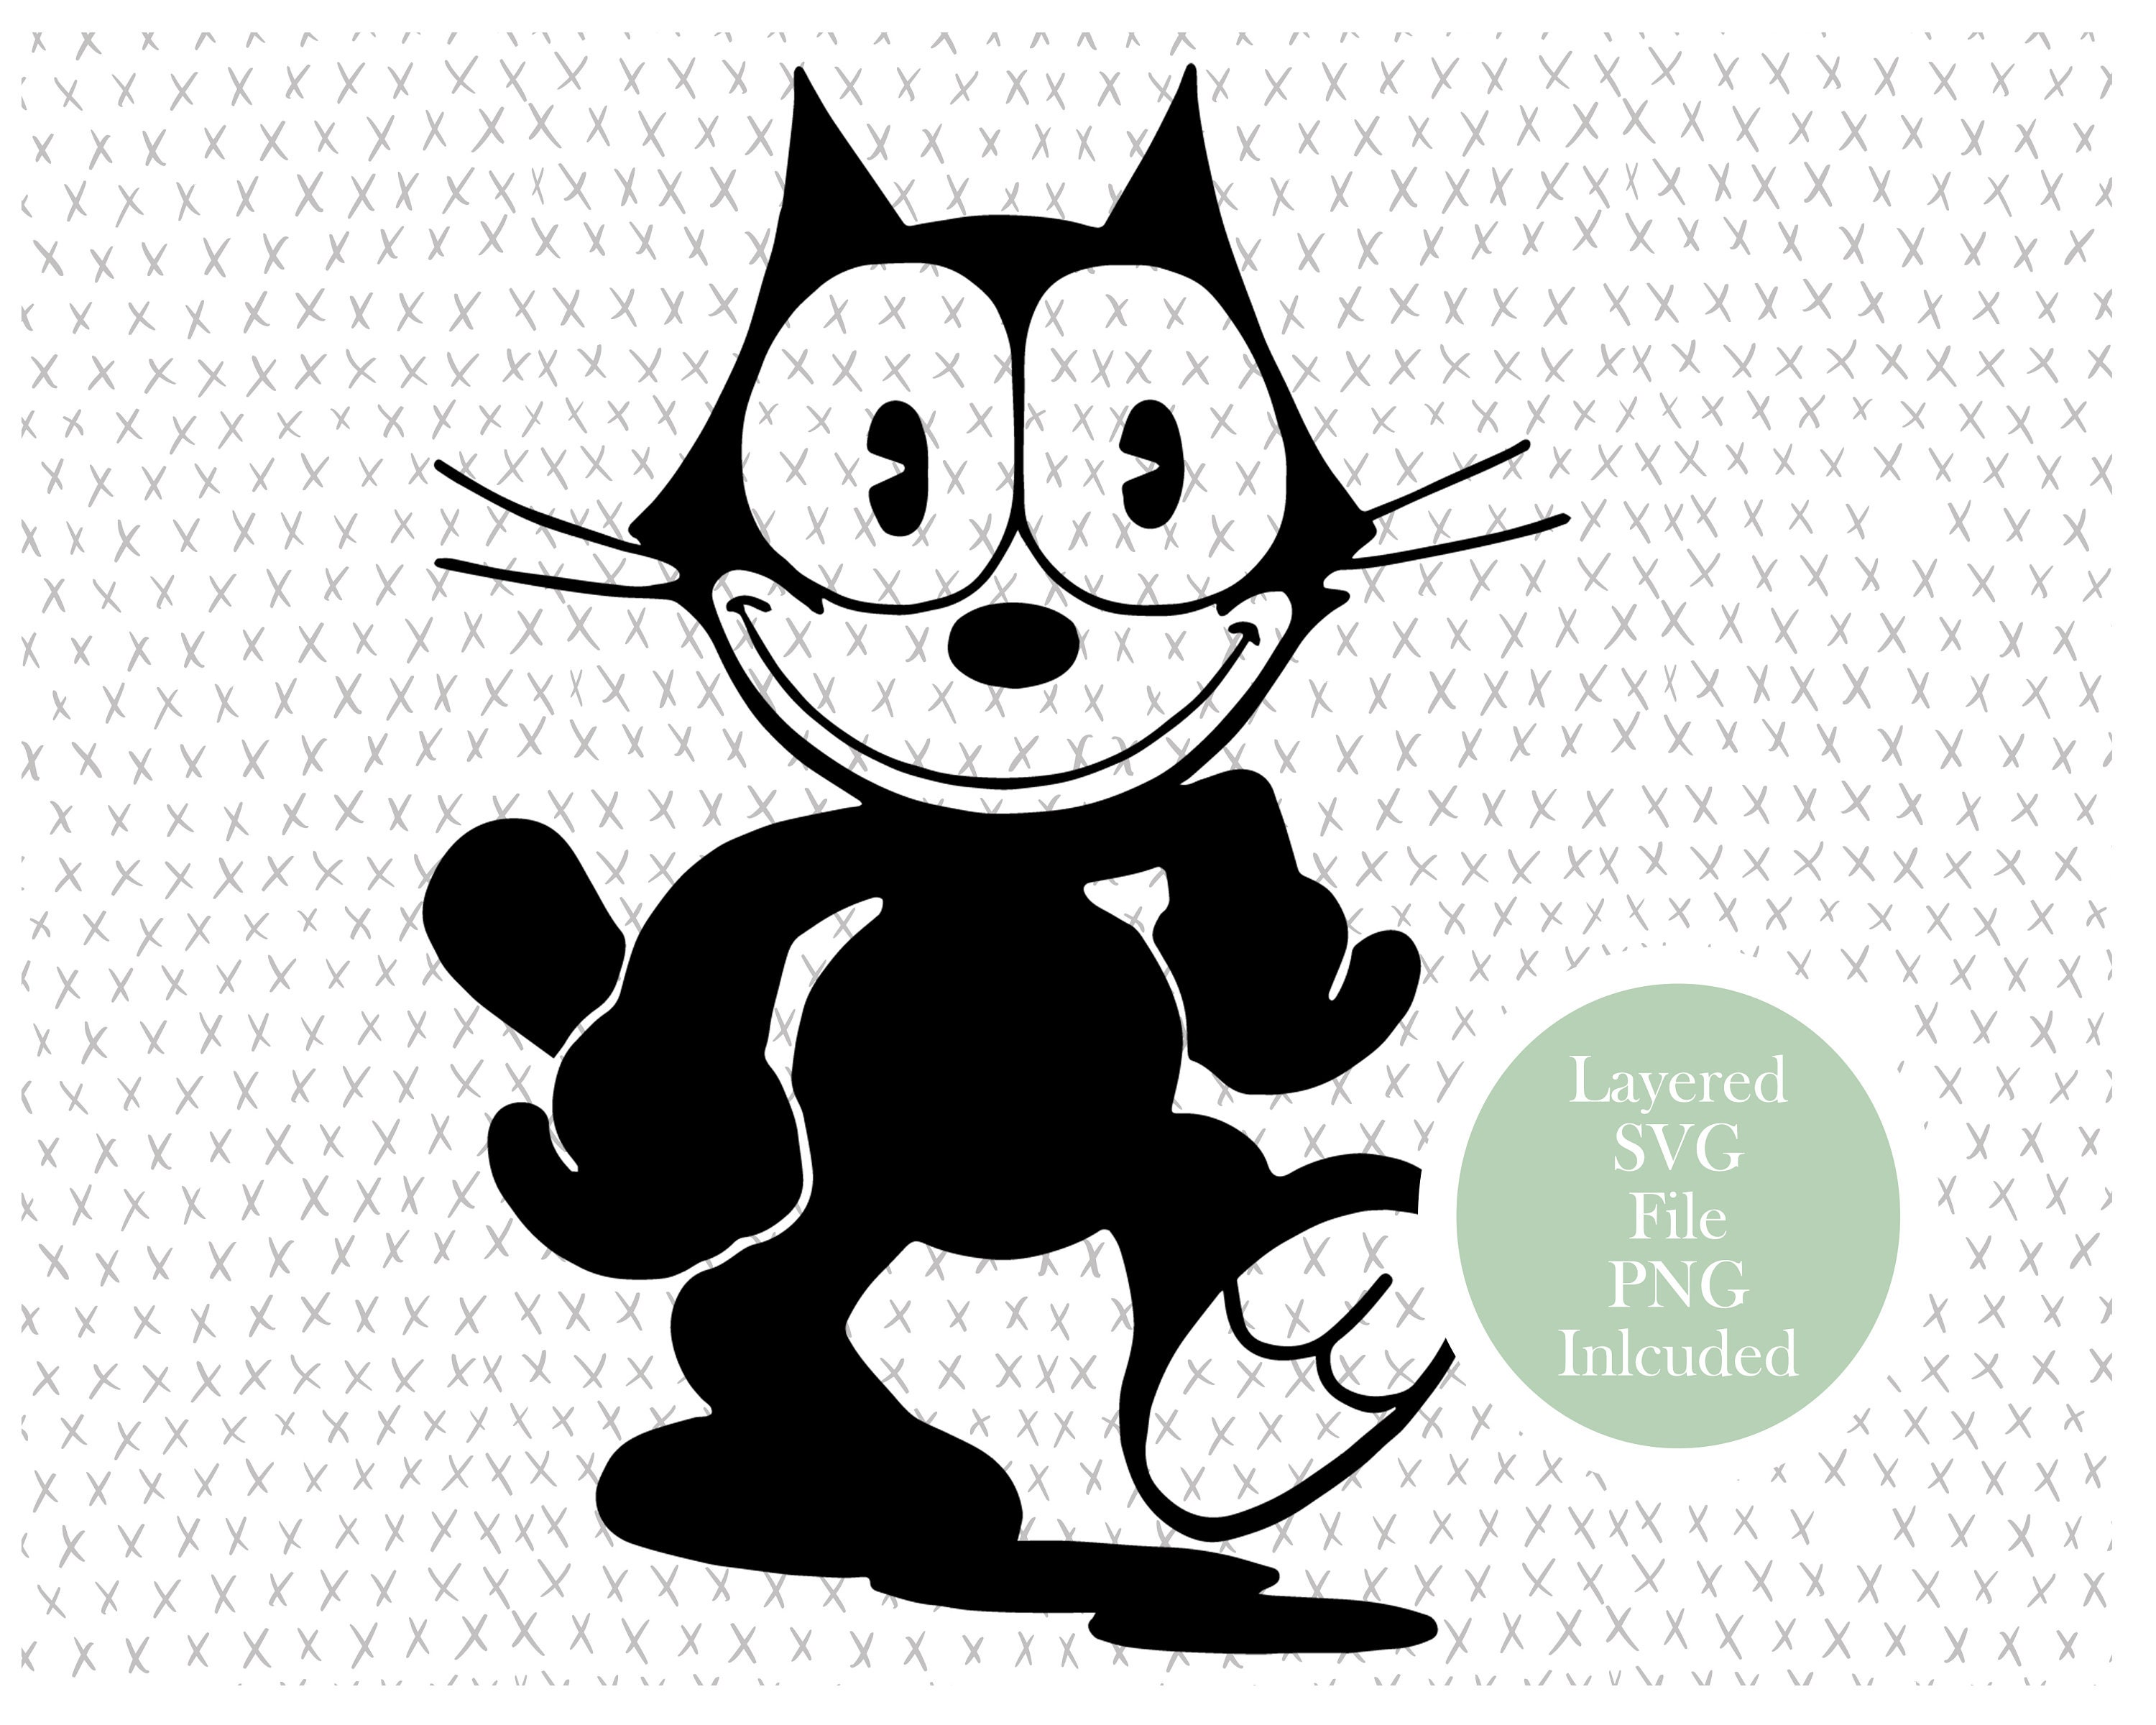 Felix the Cat embroidery kit by Un Chat Dans L-aiguille — The